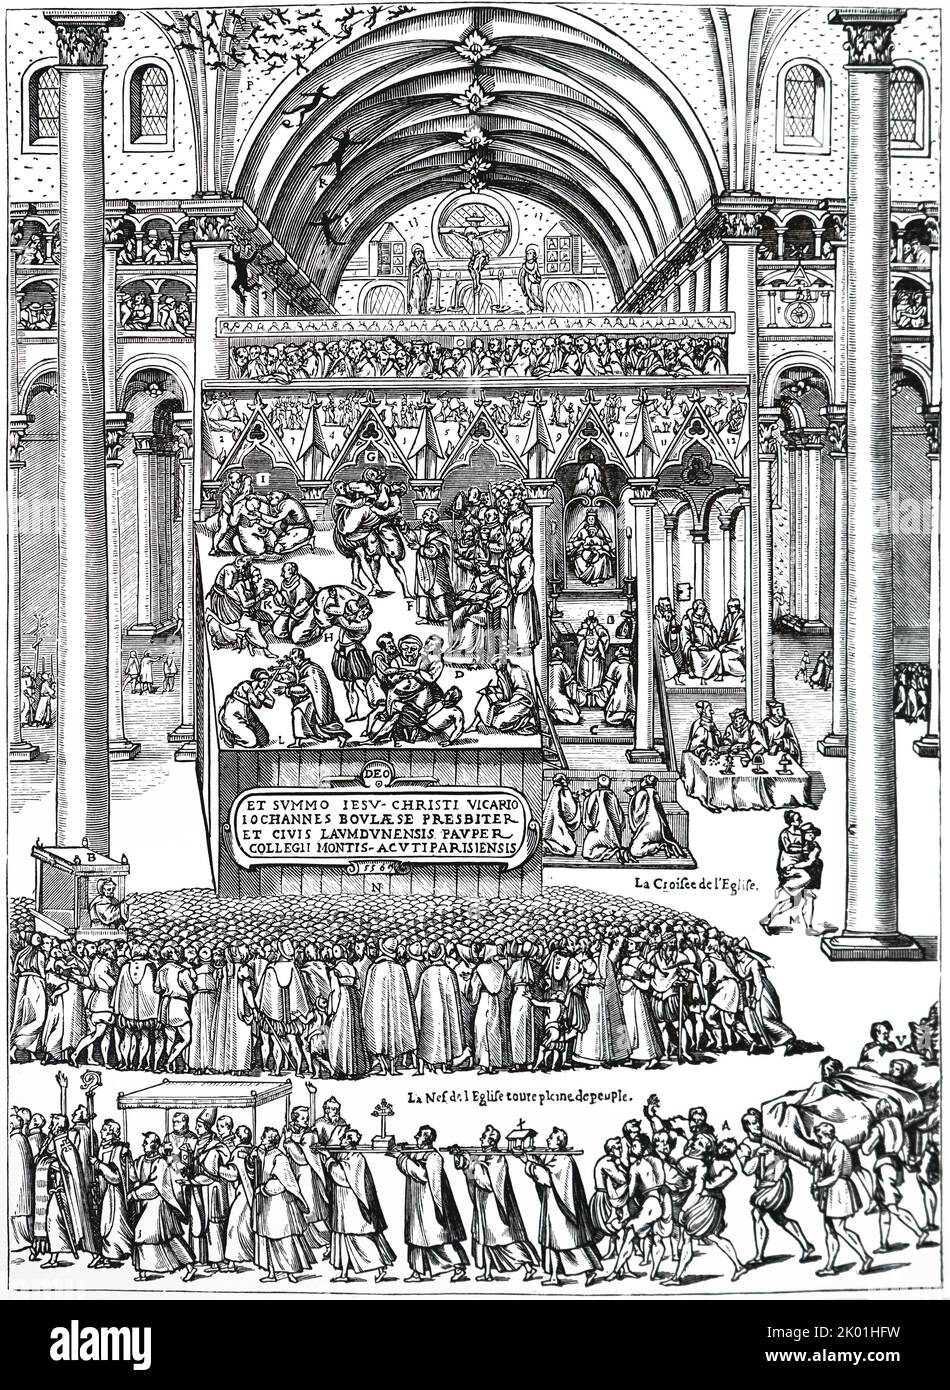 L'esorcismo di Nicole Aubry, Notre-Dame de Laon, 1556. Nicole era presumibilmente posseduta di 29 demoni, per essere visto come macchie nere che volano vicino al tetto o alla cattedrale. L'esorcismo ha richiesto nove giorni, creando un grande interesse pubblico per il processo. Copia della stampa pubblicata nel 1575. Foto Stock